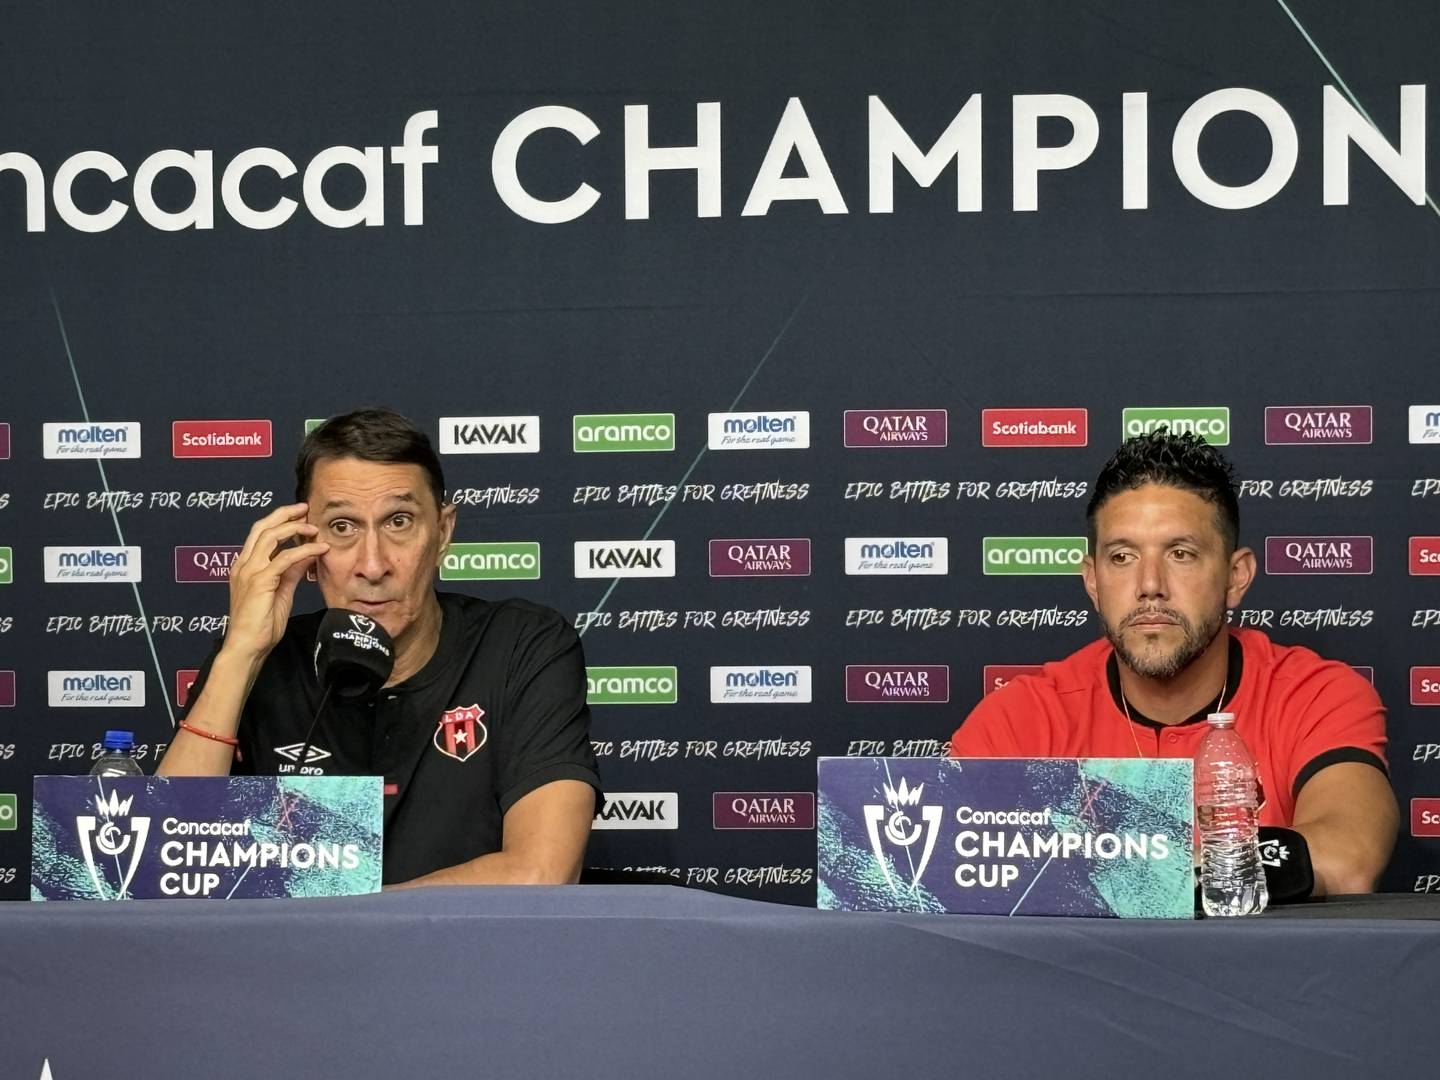 Alexandre Guimaraes y Leonel Moreira dijeron lo que esperan de Liga Deportiva Alajuelense este jueves 14 de marzo, en el partido contra New England Revolution en la Copa de Campeones de Concacaf.